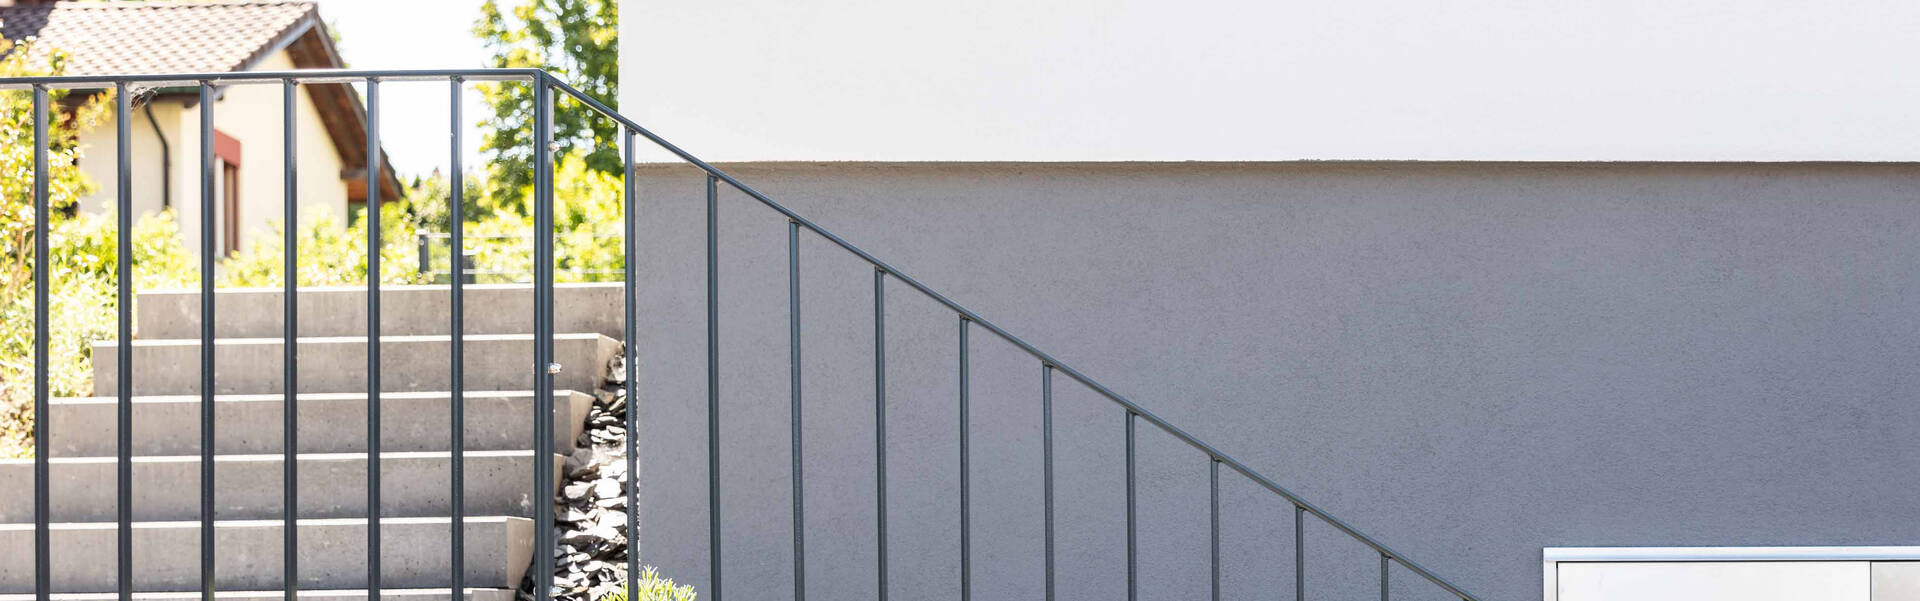 Französischer Balkon Stabgeländer Treppengeländer Balustrade Gitter Holzoptik 